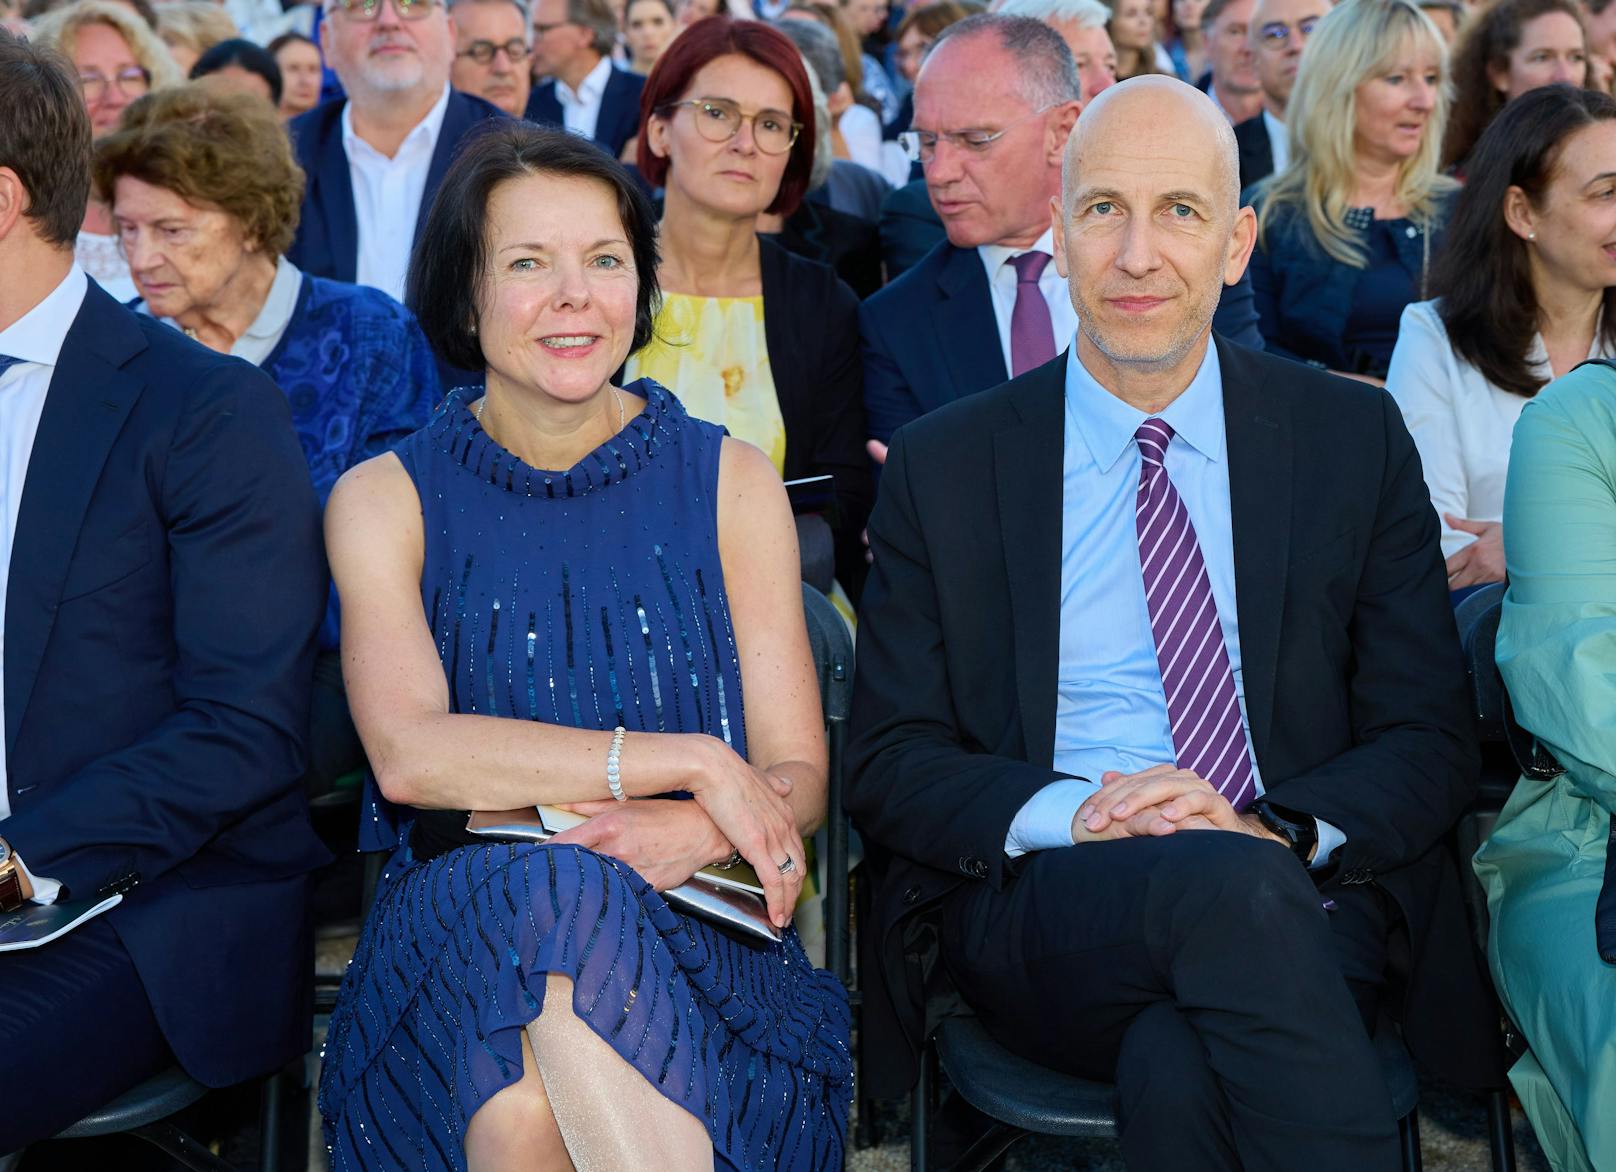 Arbeitsminister Martin Kocher (ÖVP) war mit seiner Frau Natalie vor Ort.